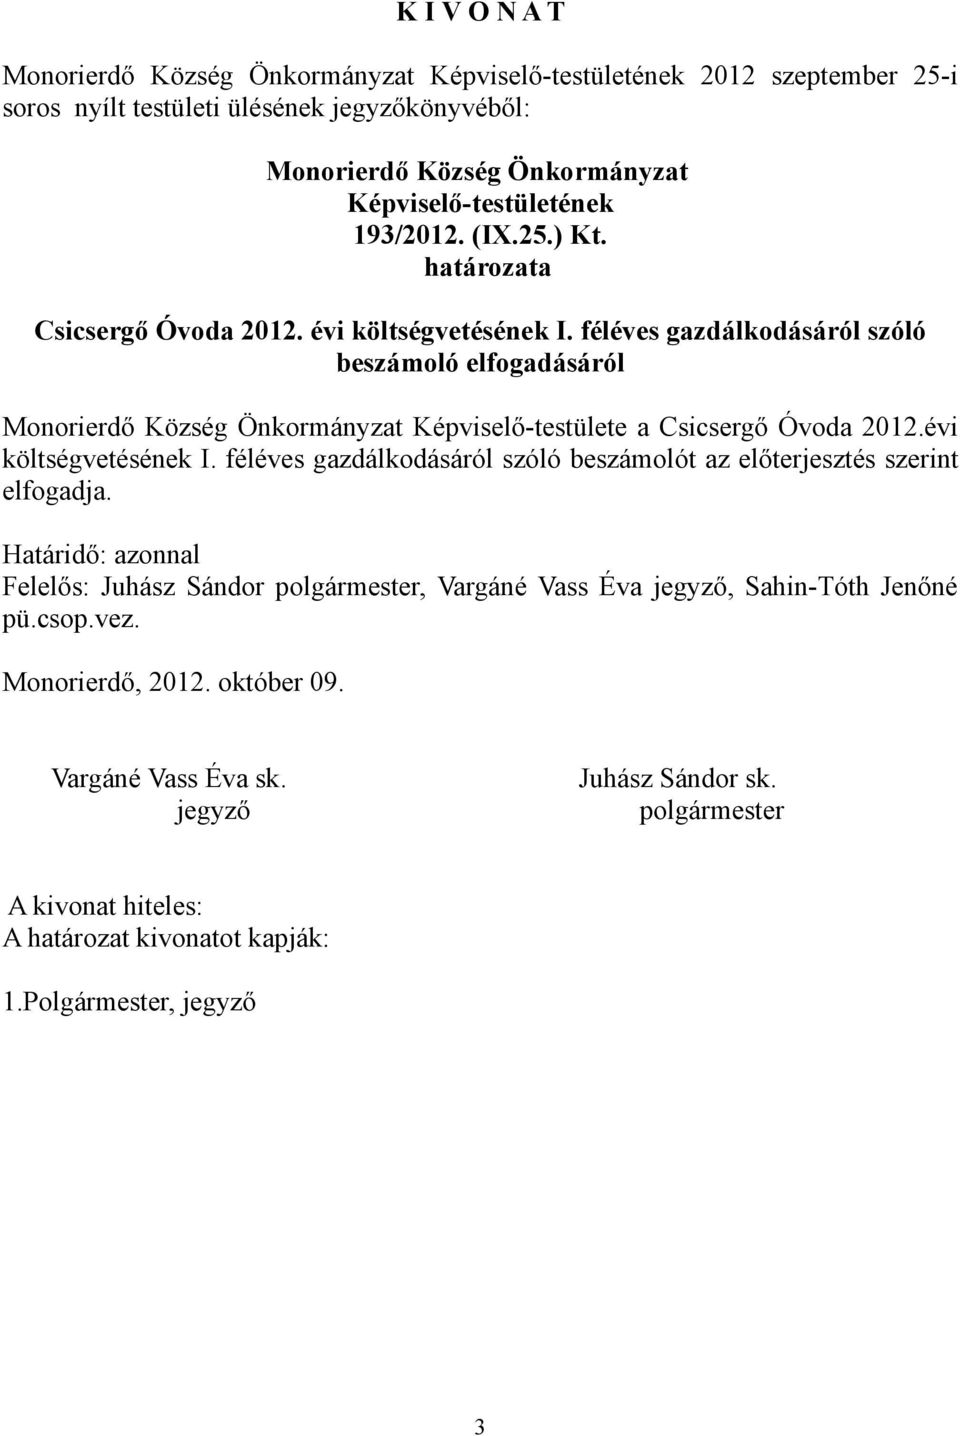 féléves gazdálkodásáról szóló beszámoló elfogadásáról Képviselő-testülete a Csicsergő Óvoda 2012.